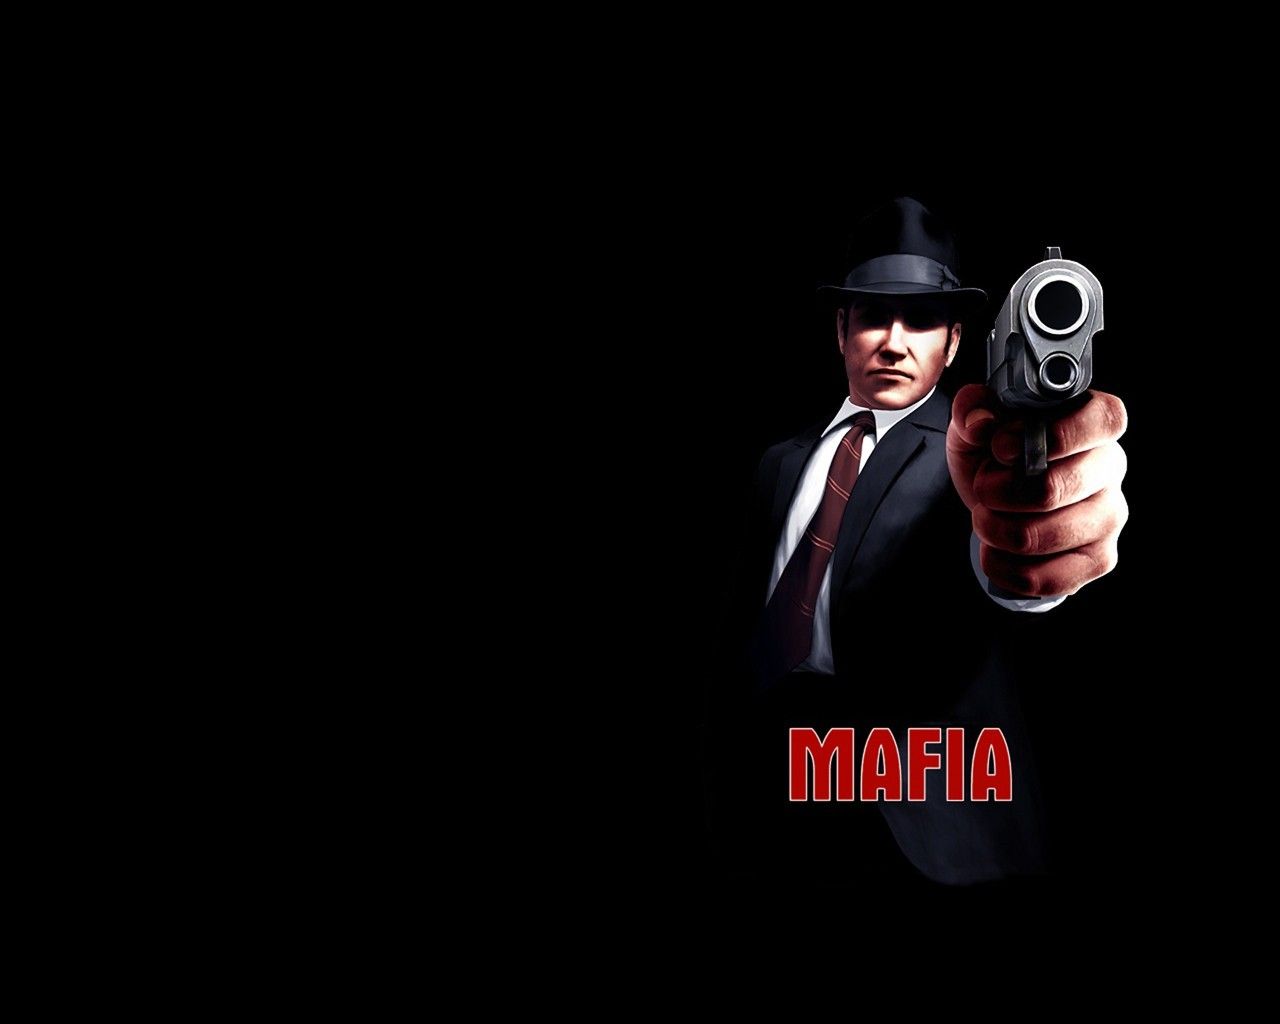 Mafia. Mafia wallpaper, Tommy angelo, Mafia